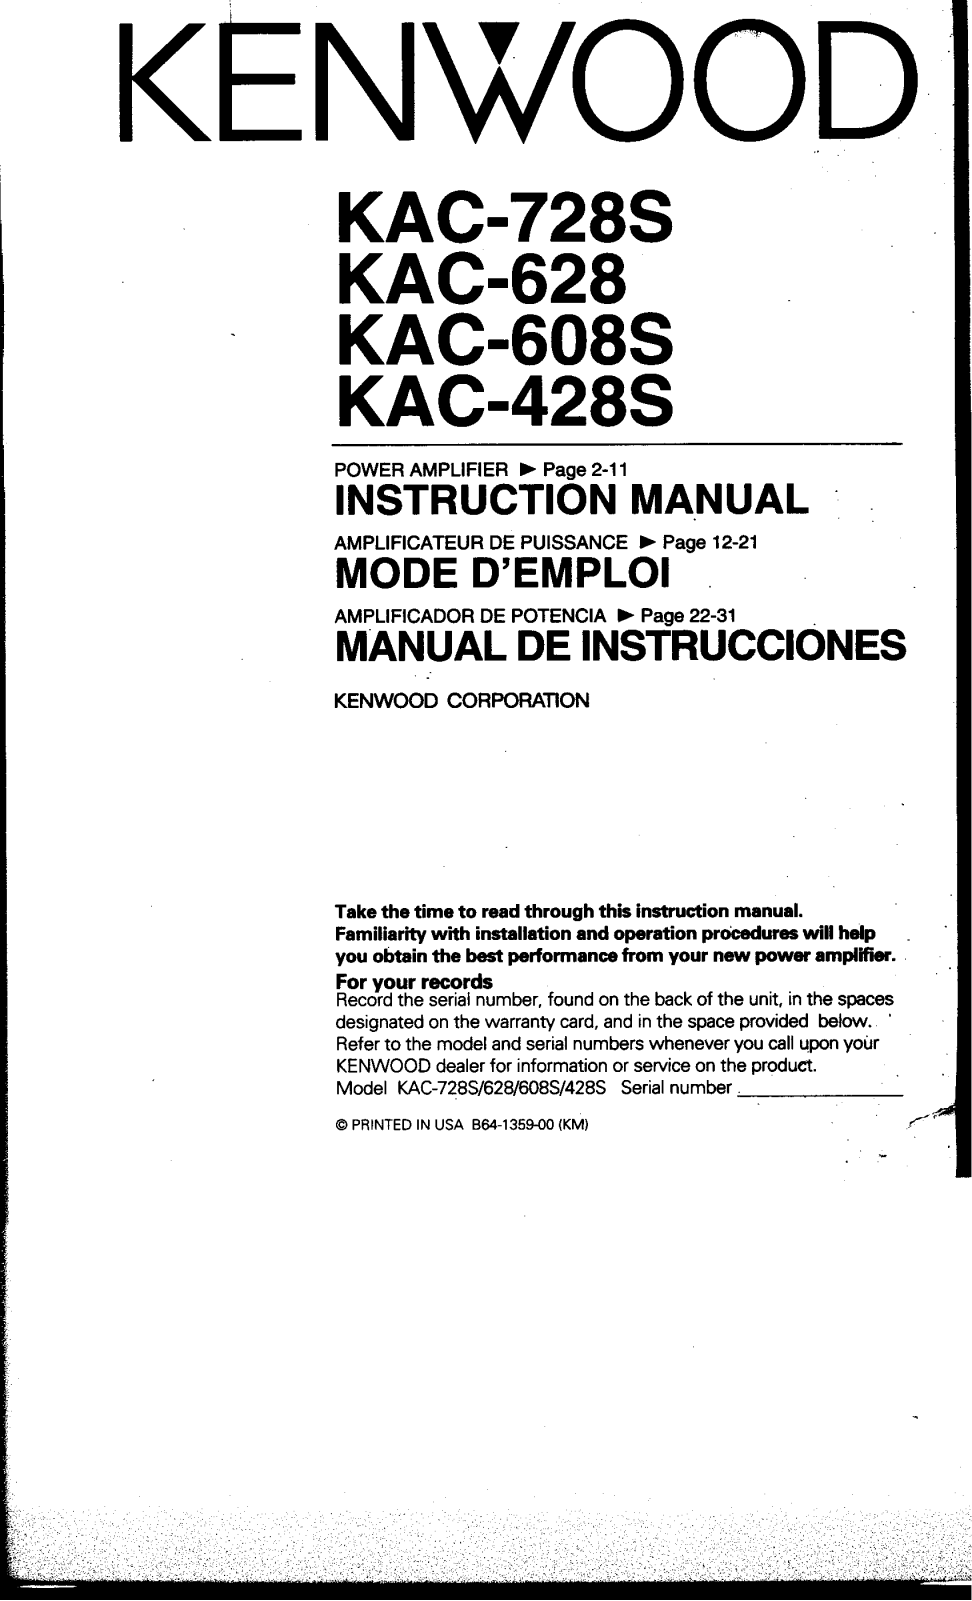 Kenwood KAC-728S, KAC-628, KAC-608S, KAC-428 Owner's Manual